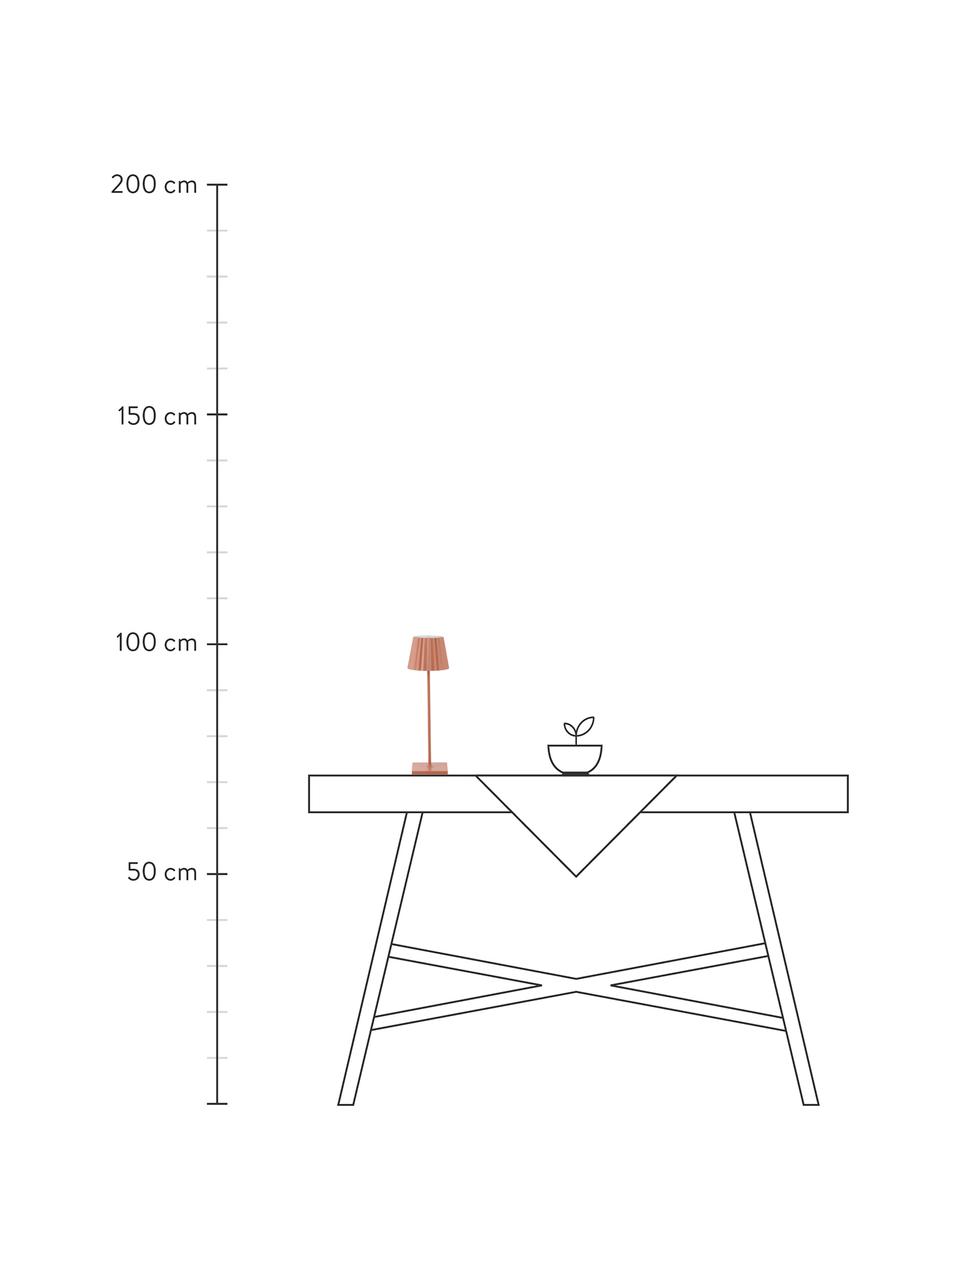 Lampada da tavolo dimmerabile da esterno Trellia, Paralume: alluminio verniciato, Base della lampada: alluminio verniciato, Arancione, Ø 15 x Alt. 38 cm